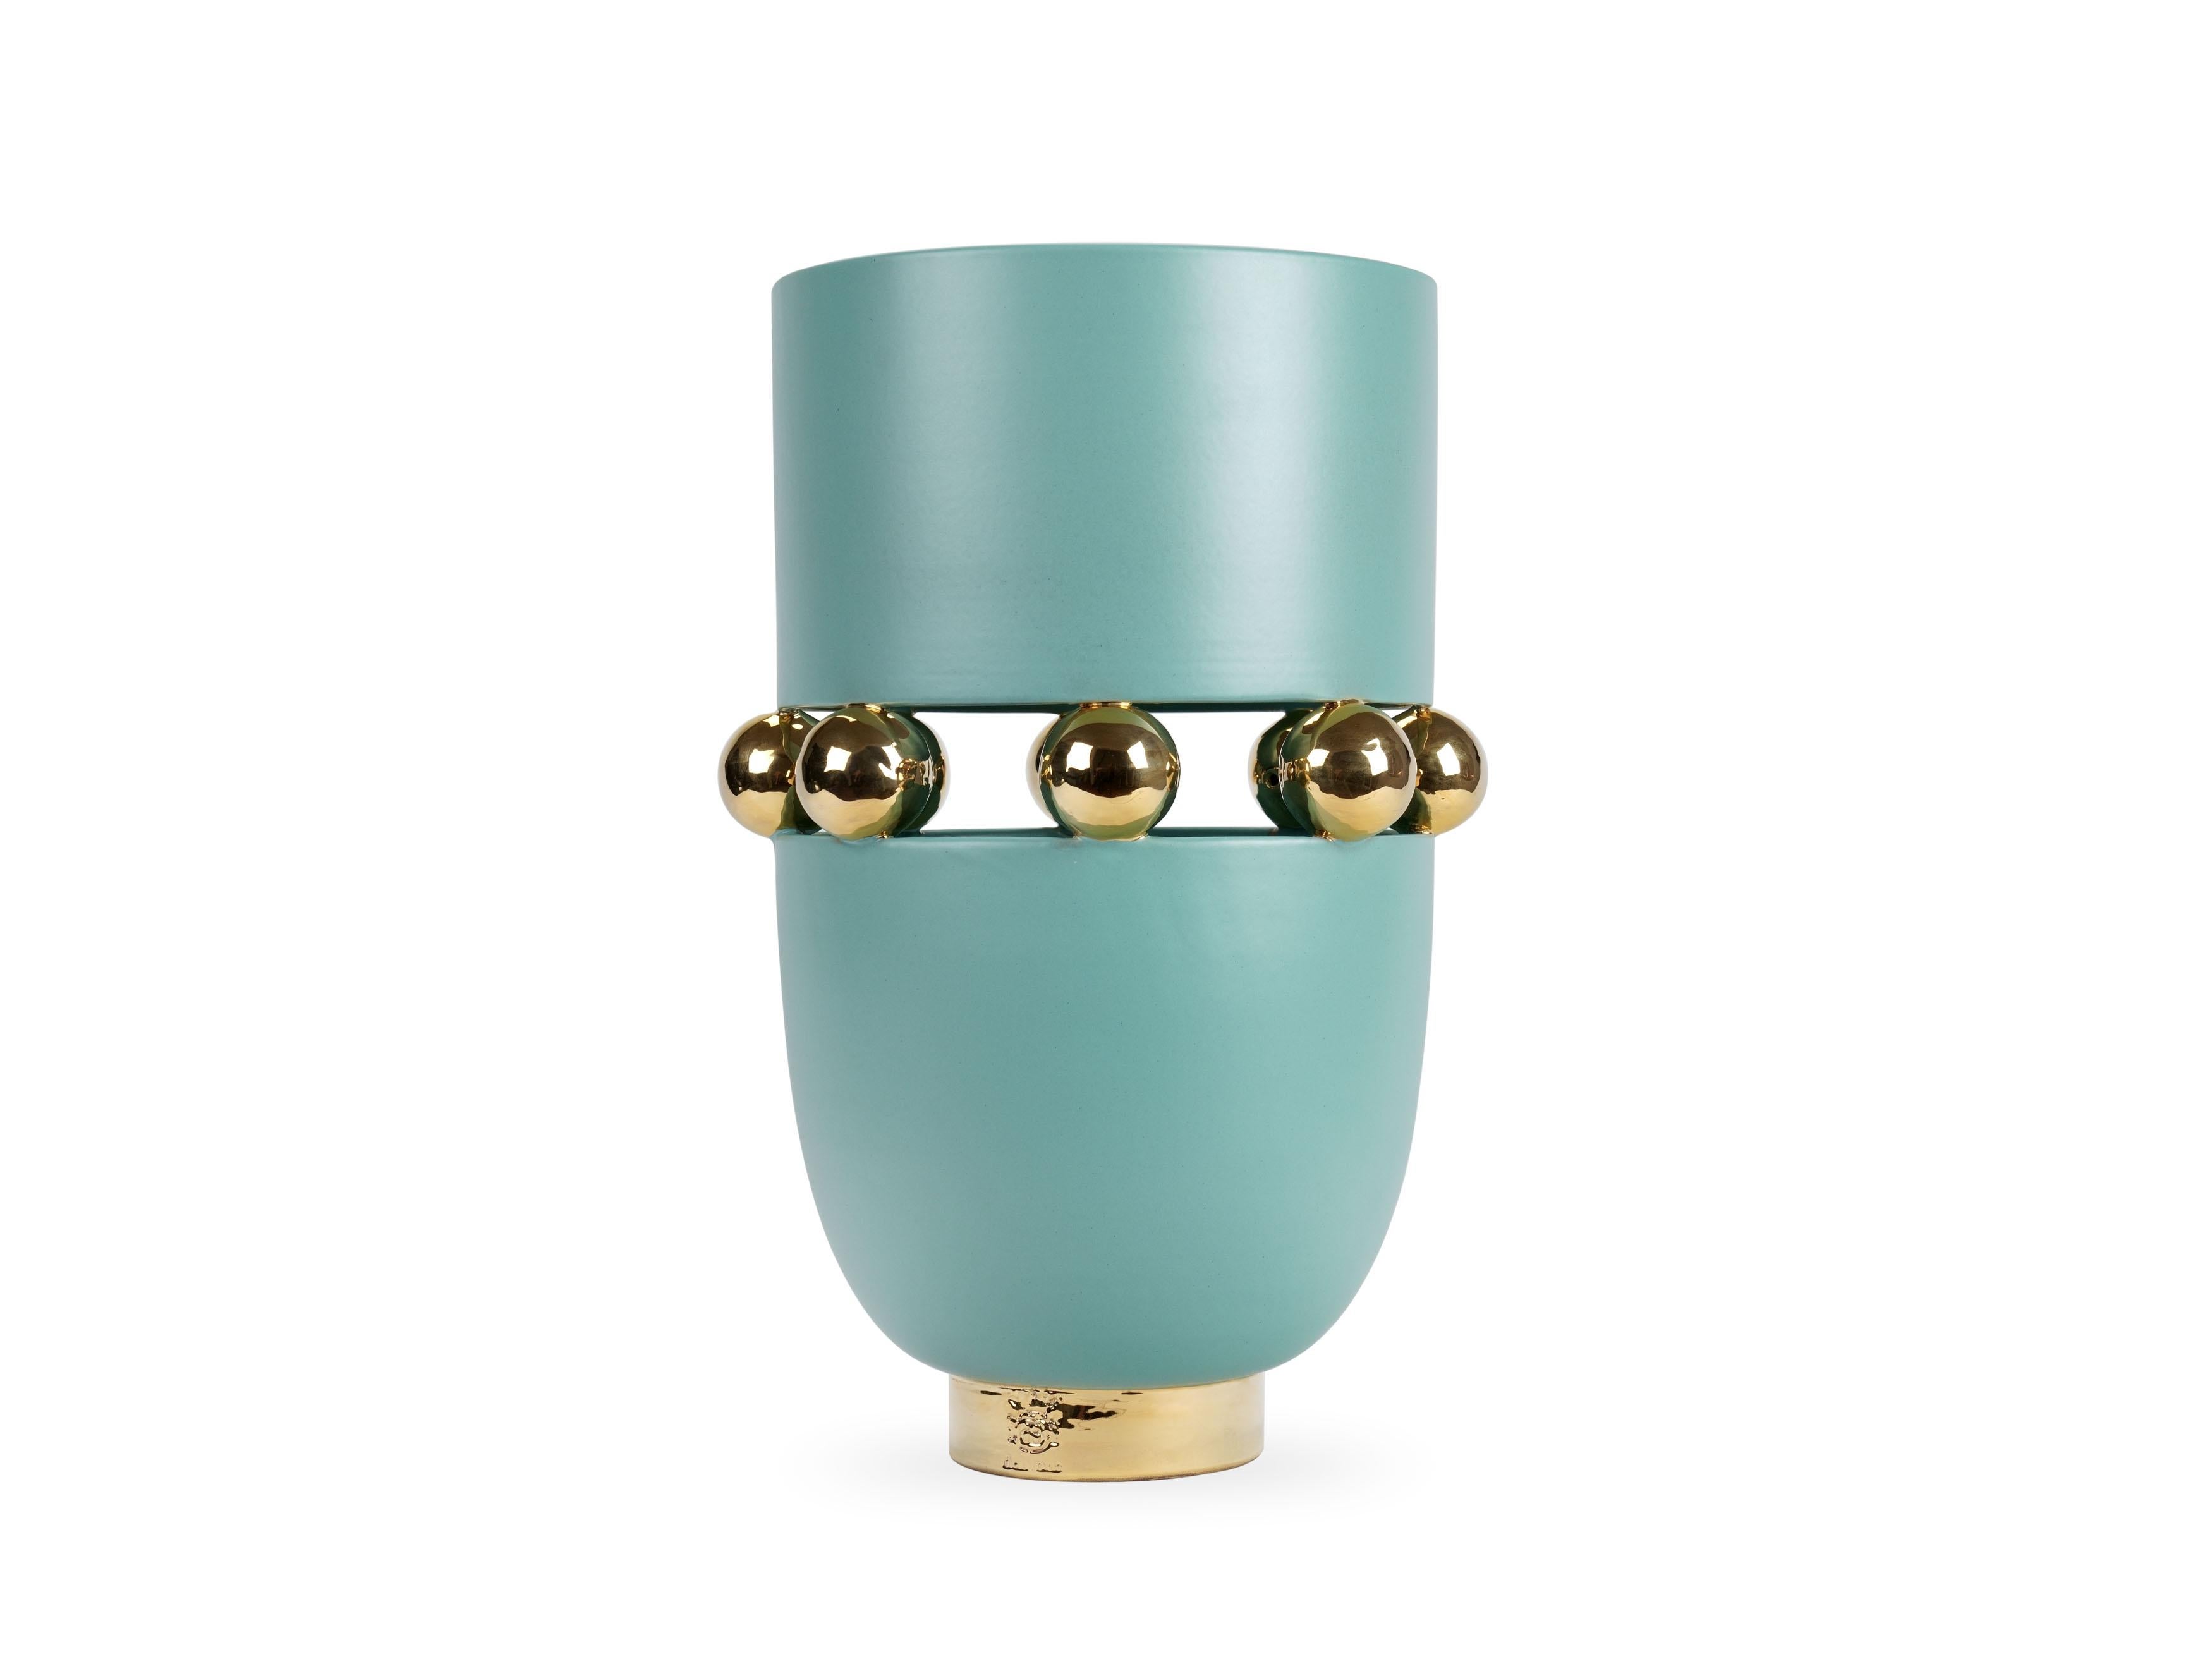 Elegante aquamarinfarbene Vase mit matter Oberfläche, die sich mit spiegelnden Oberflächen abwechselt, die mit 24-karätigem Goldglanz verziert sind. Bei dieser Technik werden die Keramiken drei Brennphasen unterzogen: Die letzte, der so genannte